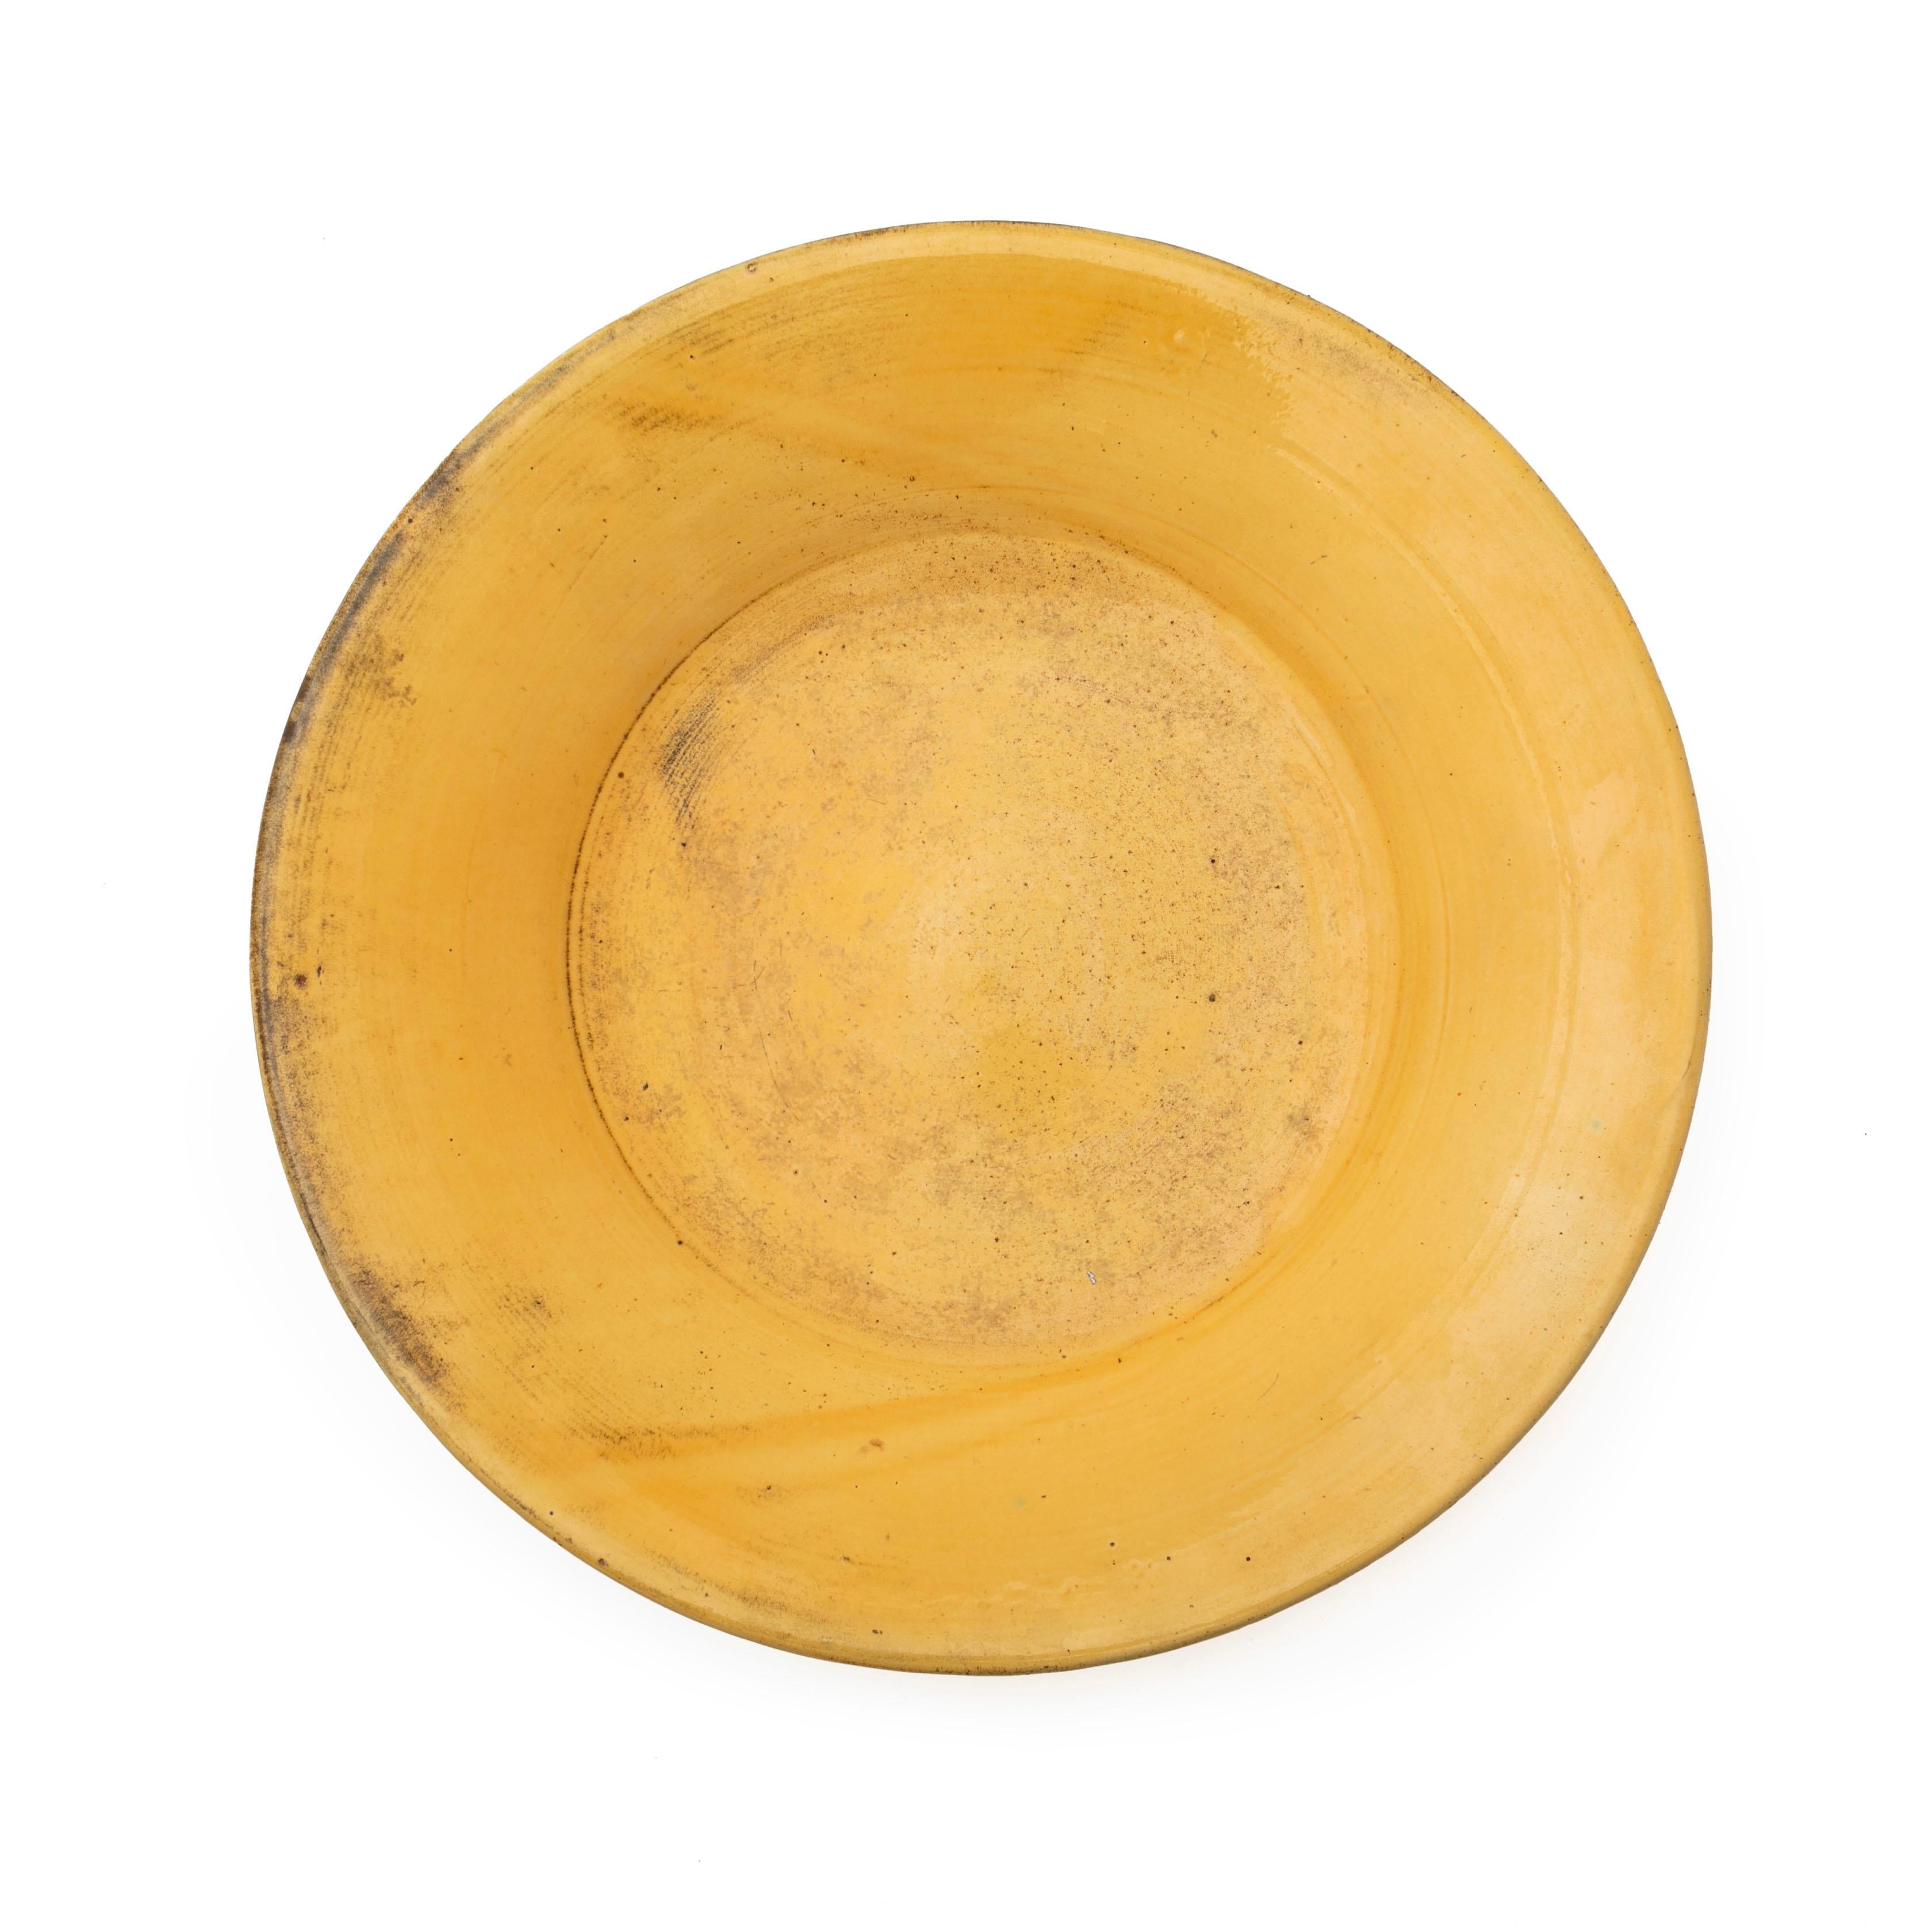 Large bowl / dish in glazed stoneware.
Beautiful yellow uranium glaze. 
Measures: 40.5 x 7 cm. 

Signed HAK.

Denmark 1920-1930s